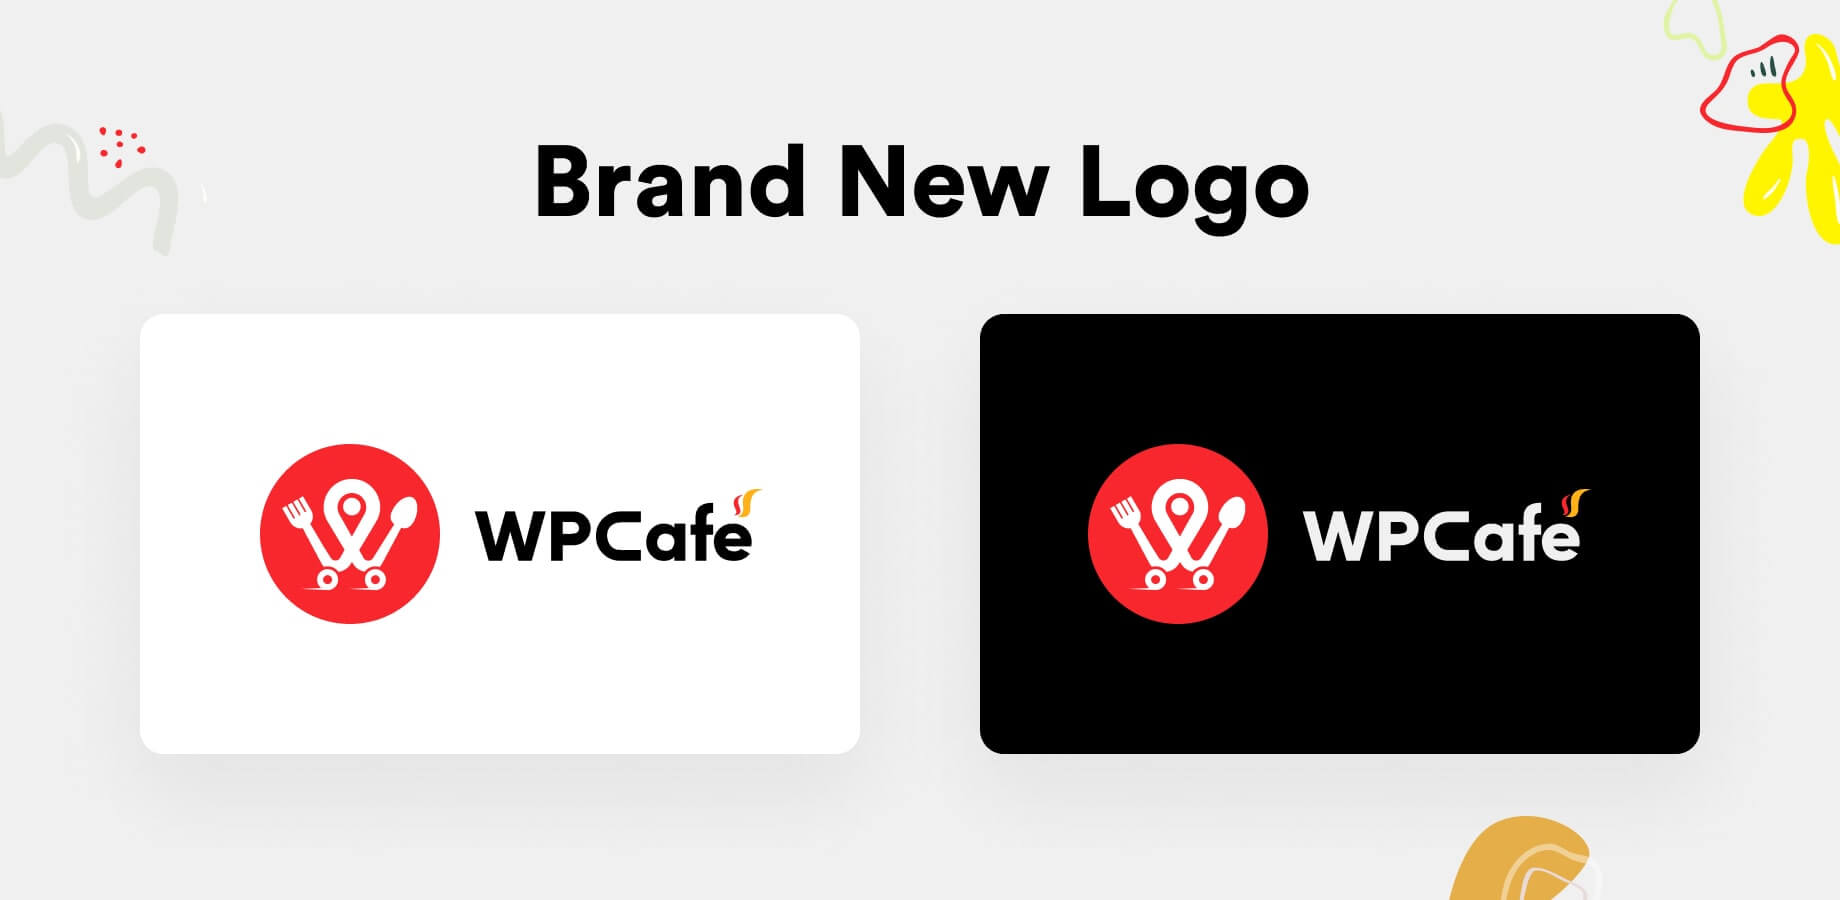 wpcafe 2.0 brand new logo